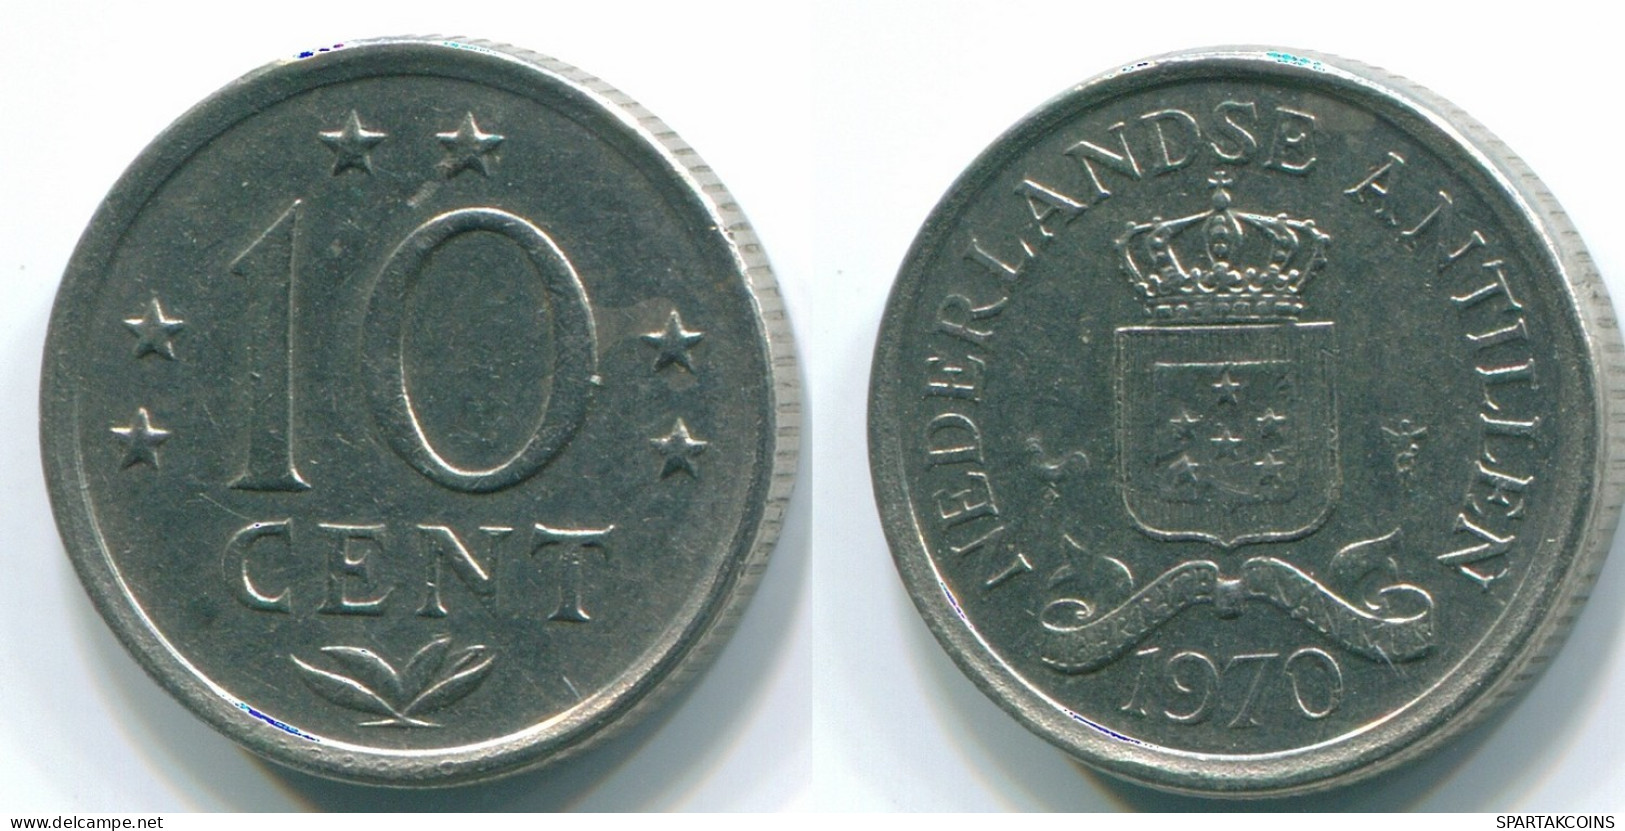 10 CENTS 1970 NETHERLANDS ANTILLES Nickel Colonial Coin #S13359.U.A - Niederländische Antillen